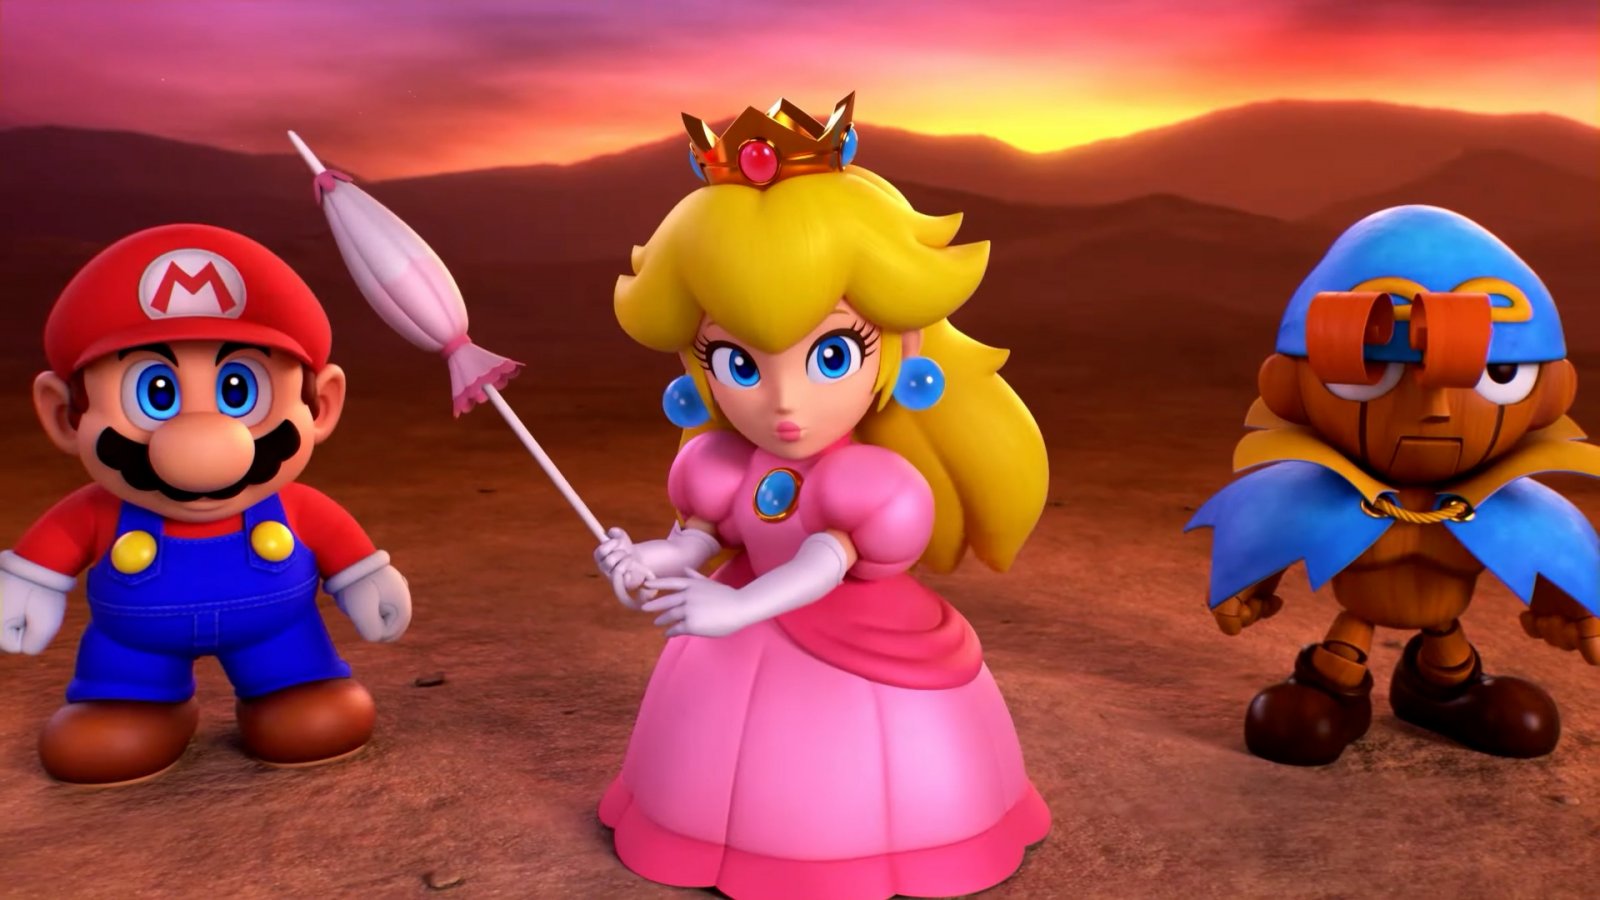 Super Mario RPG rimane il gioco più atteso dai lettori di Famitsu